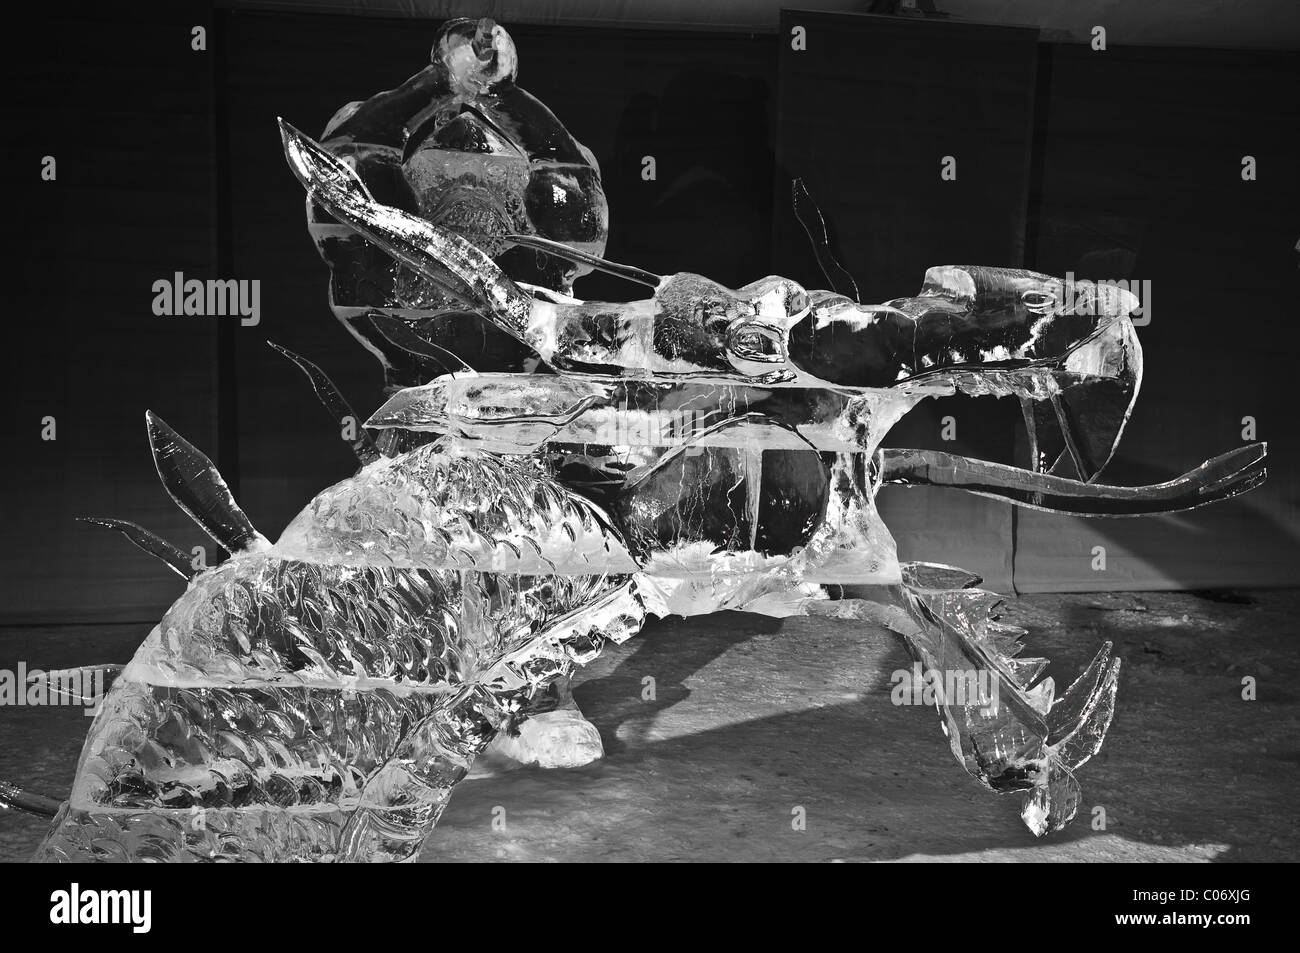 Des équipes de sculpteurs sur glace professionnel travailler ensemble à construire des sculptures de glace massive basée sur le thème "Yin et Yang" au bal. Banque D'Images